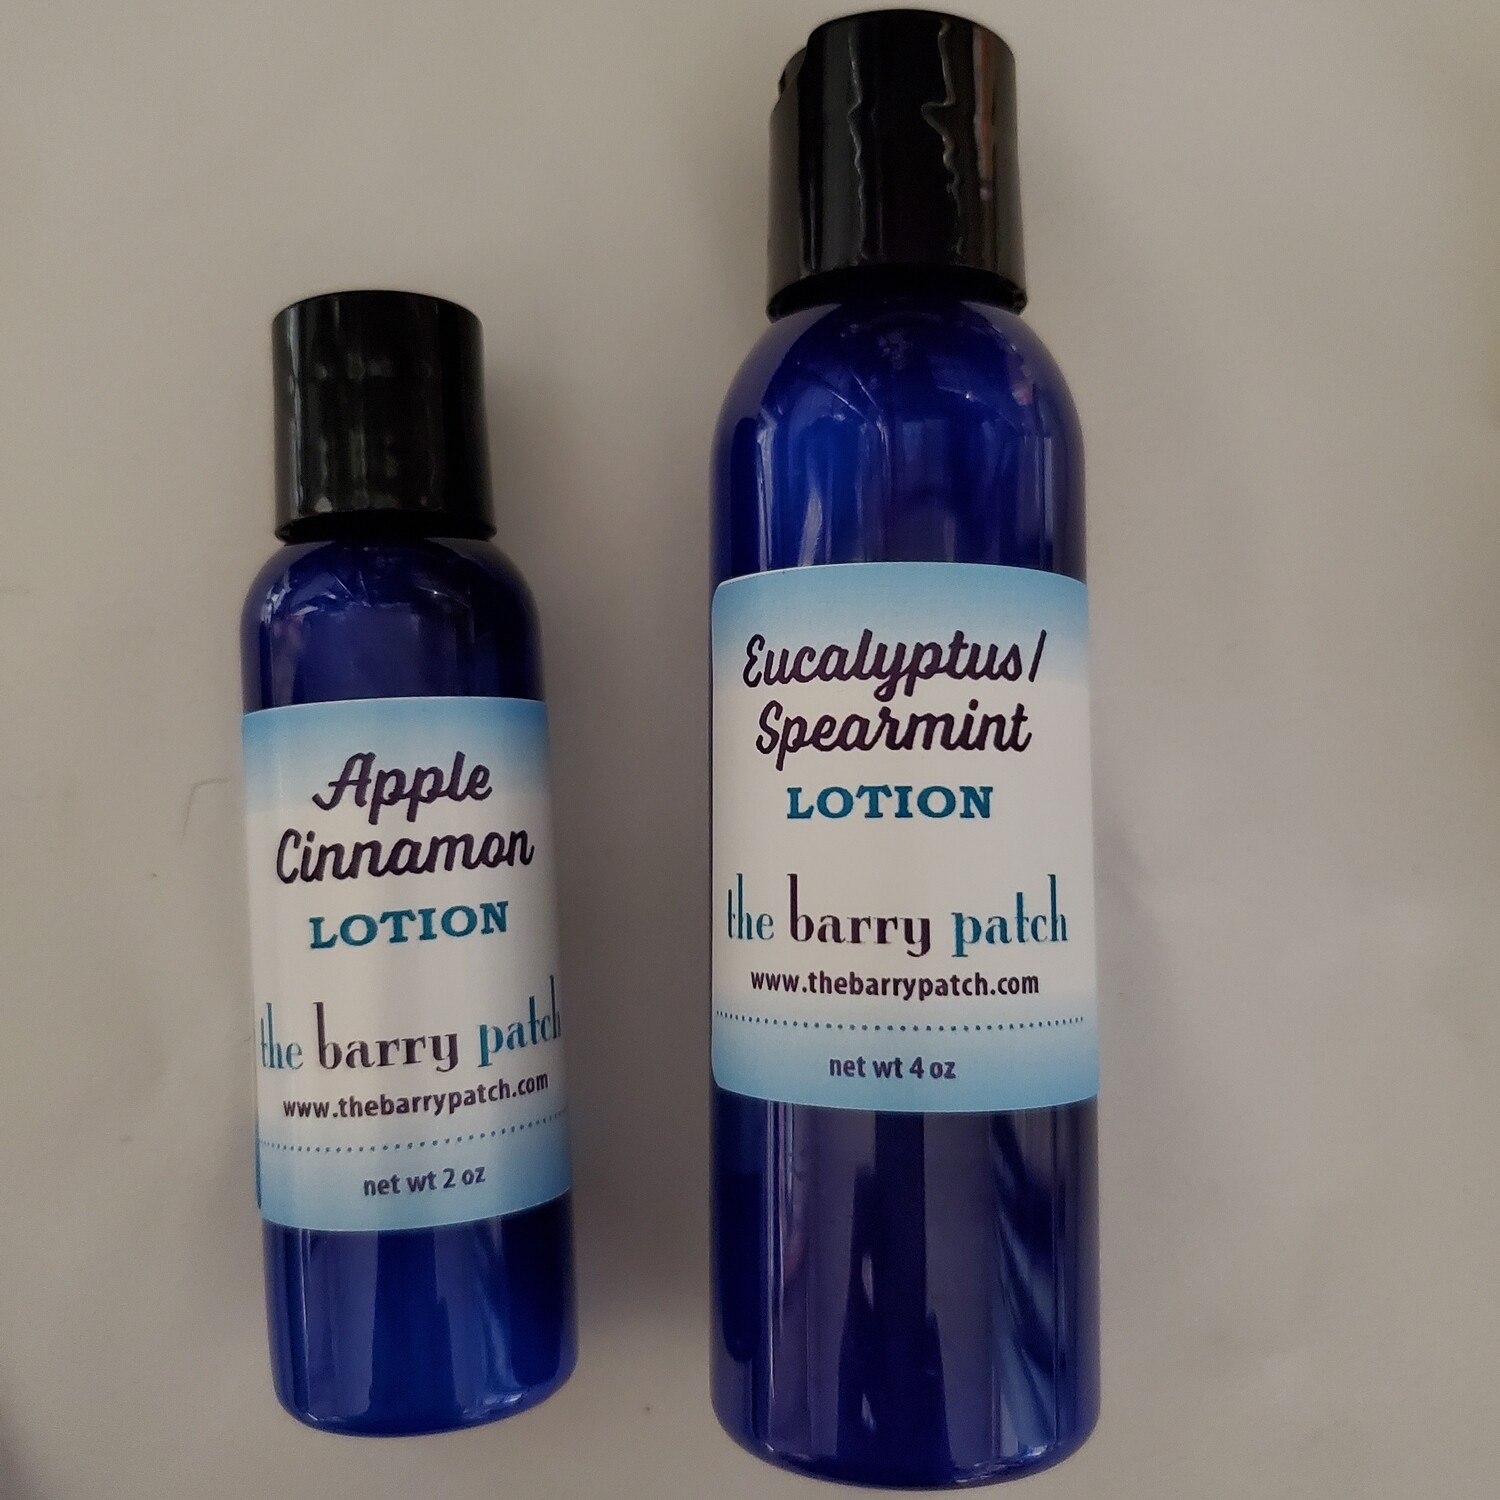 Eucalyptus/spearmint hand lotion